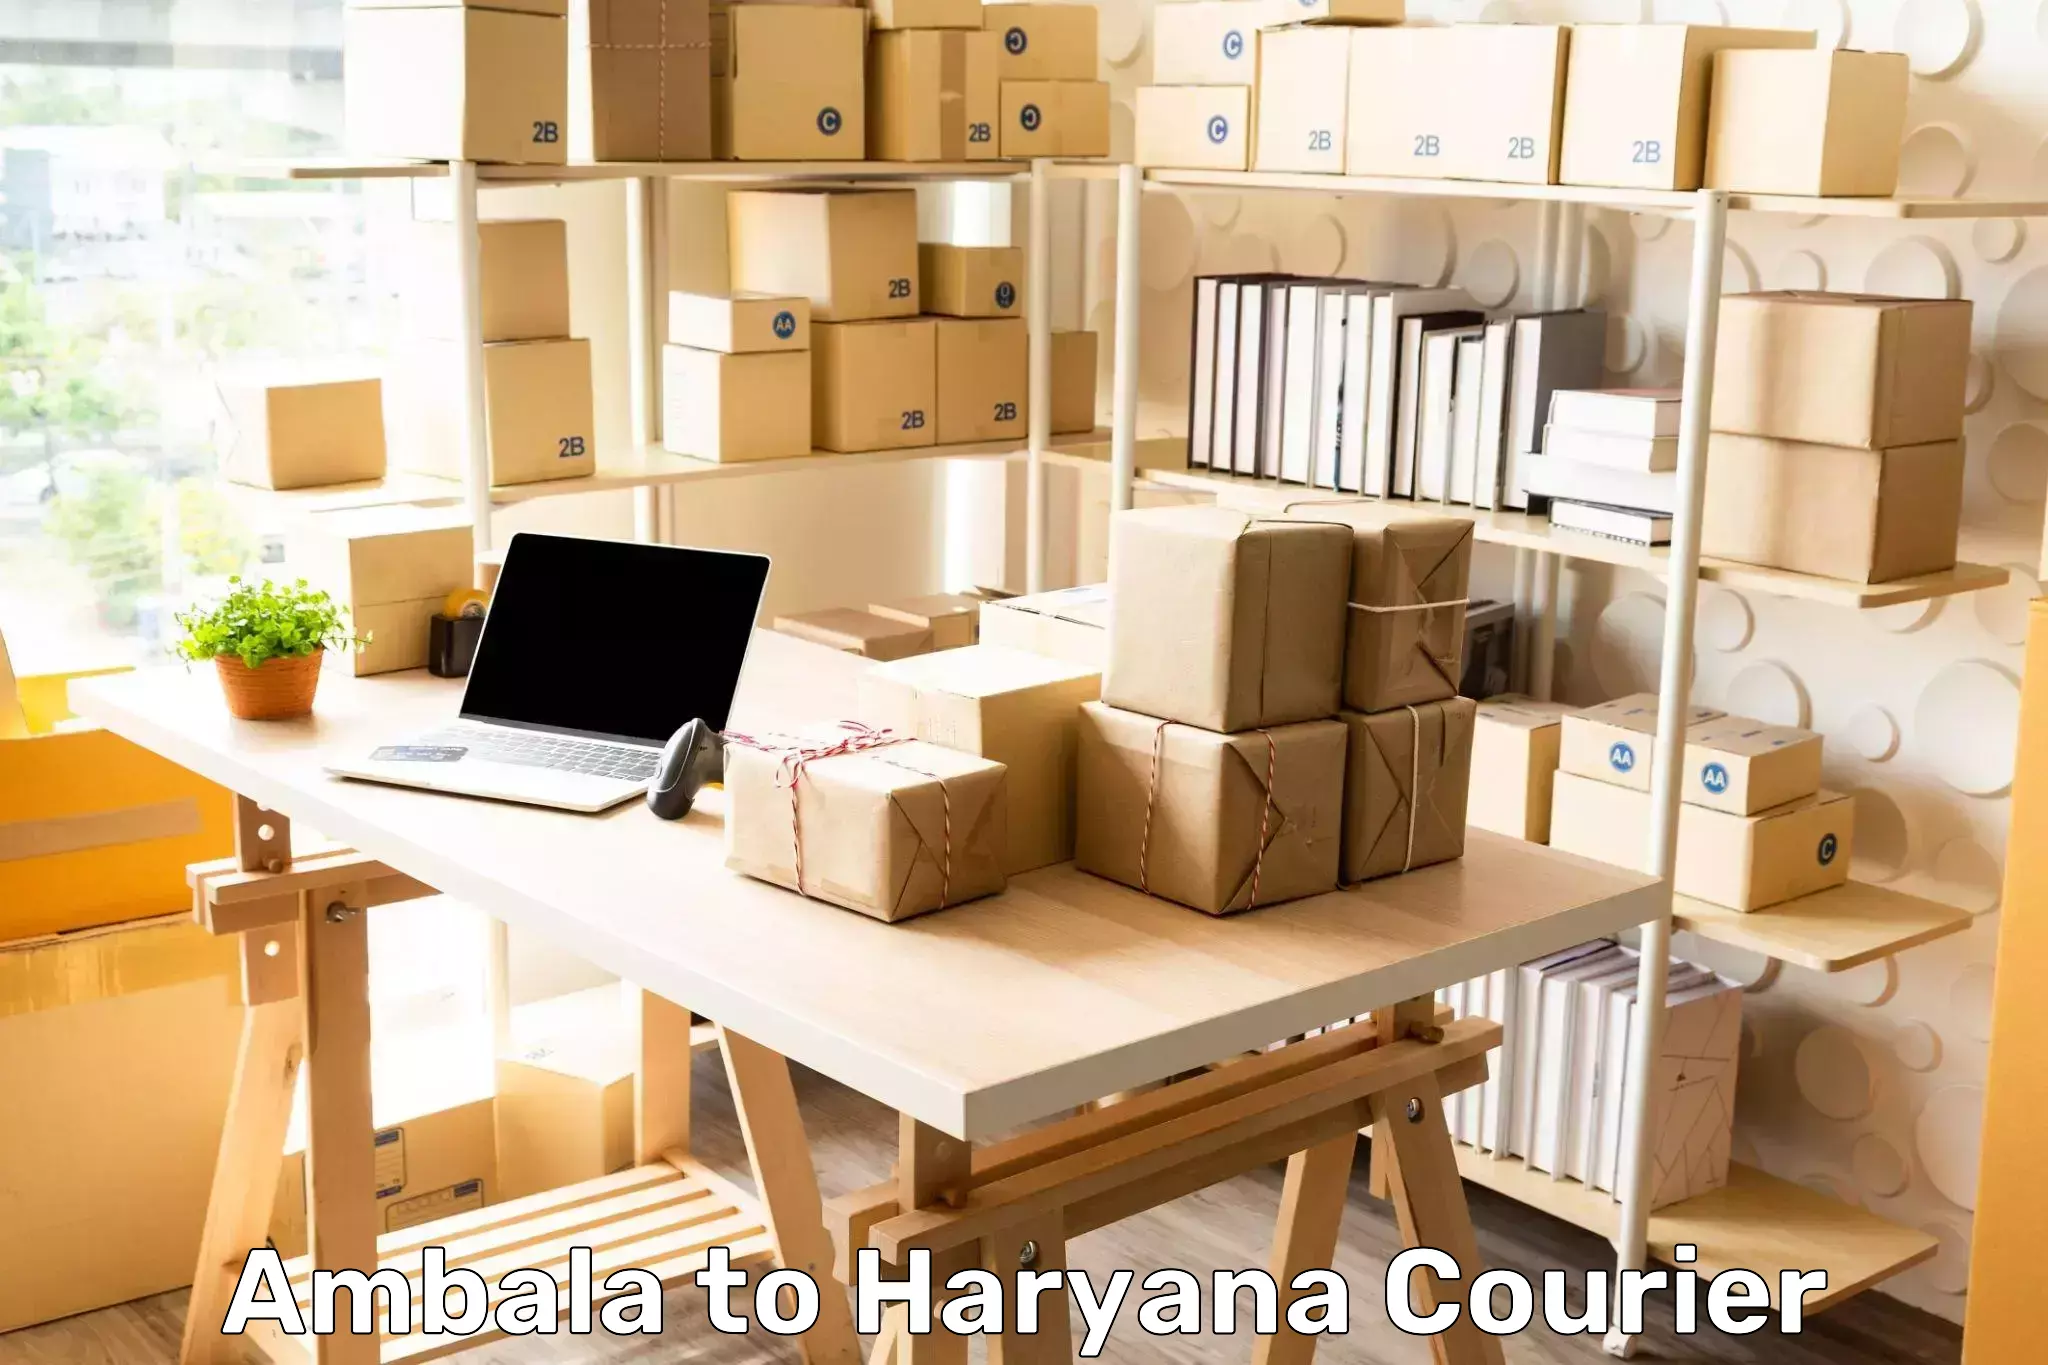 Urgent courier needs Ambala to Gurgaon